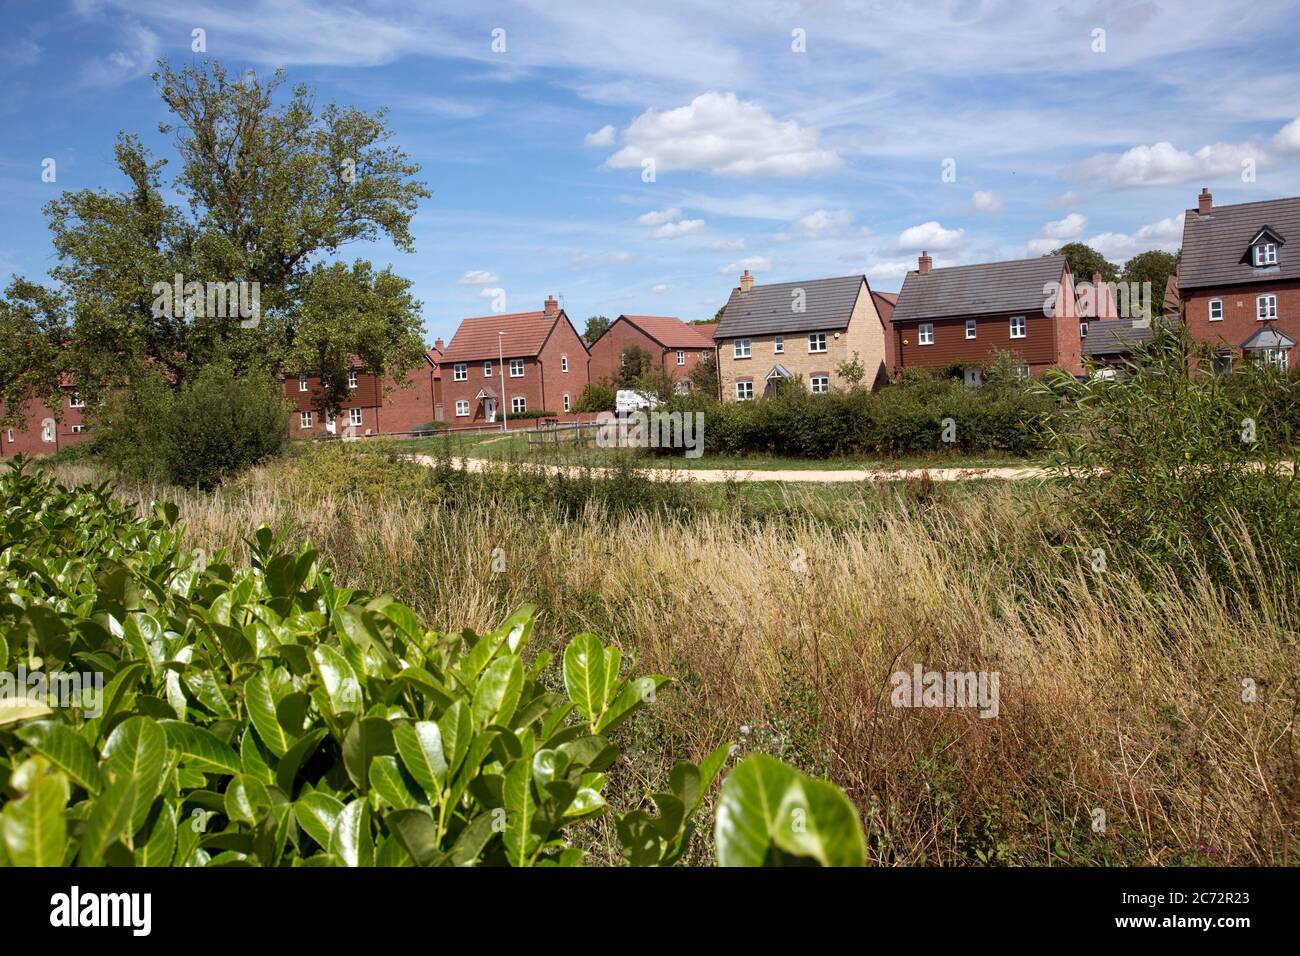 Long Marston Garden Village, vorgeschlagene Entwicklung der Gemeinschaft von 4000 attraktiven gut gestalteten hochwertigen Häusern Häuser auf ehemaligen Brachfeld-Website wi Stockfoto